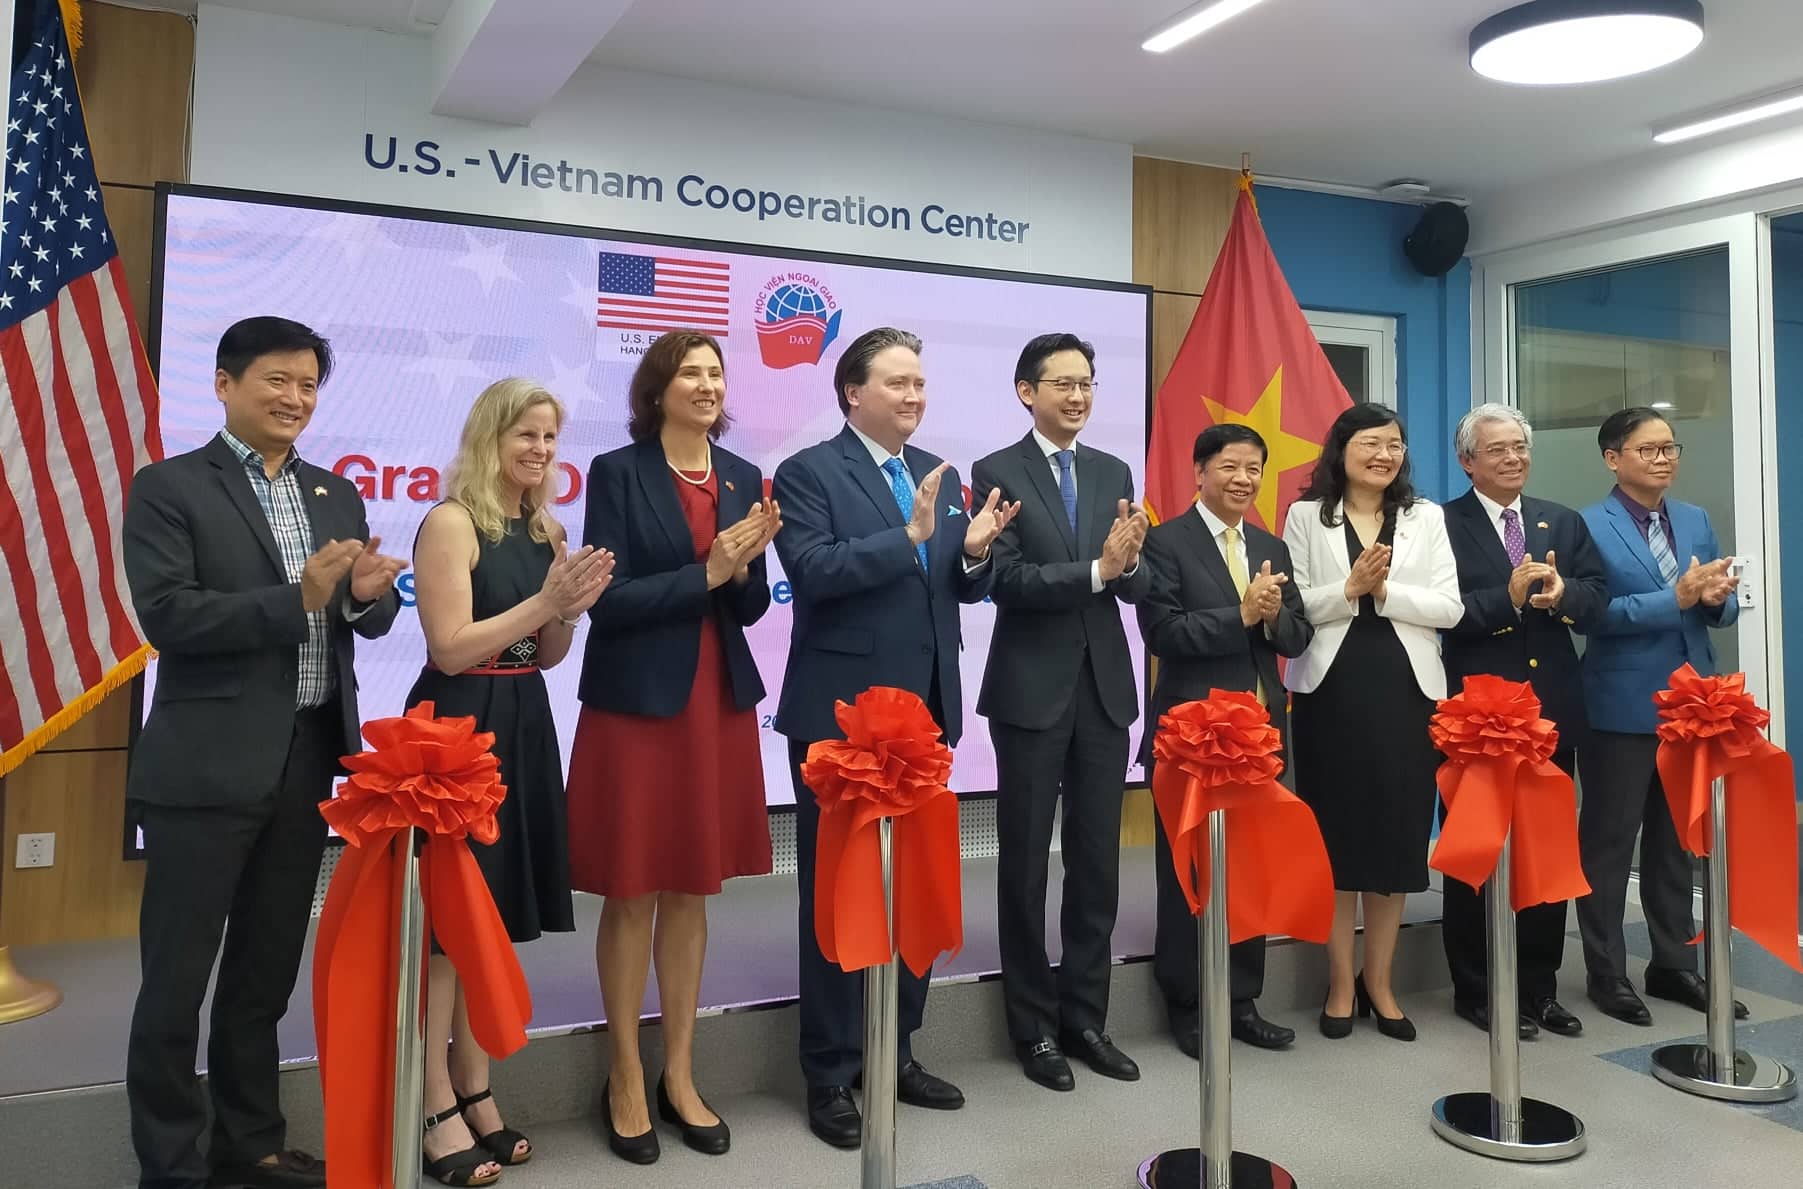 Trung tâm Hợp tác Việt Nam - Mỹ là một trong những cơ quan đối tác quan trọng nhất trong quan hệ ngoại giao giữa hai nước. Quốc kỳ của Mỹ hiện tại vẫn là một trong những biểu tượng quan trọng nhất của quan hệ này. Nếu bạn muốn tìm hiểu thêm về quốc kỳ Nam Mỹ trong quan hệ ngoại giao giữa hai nước, hãy xem hình ảnh tại đây.